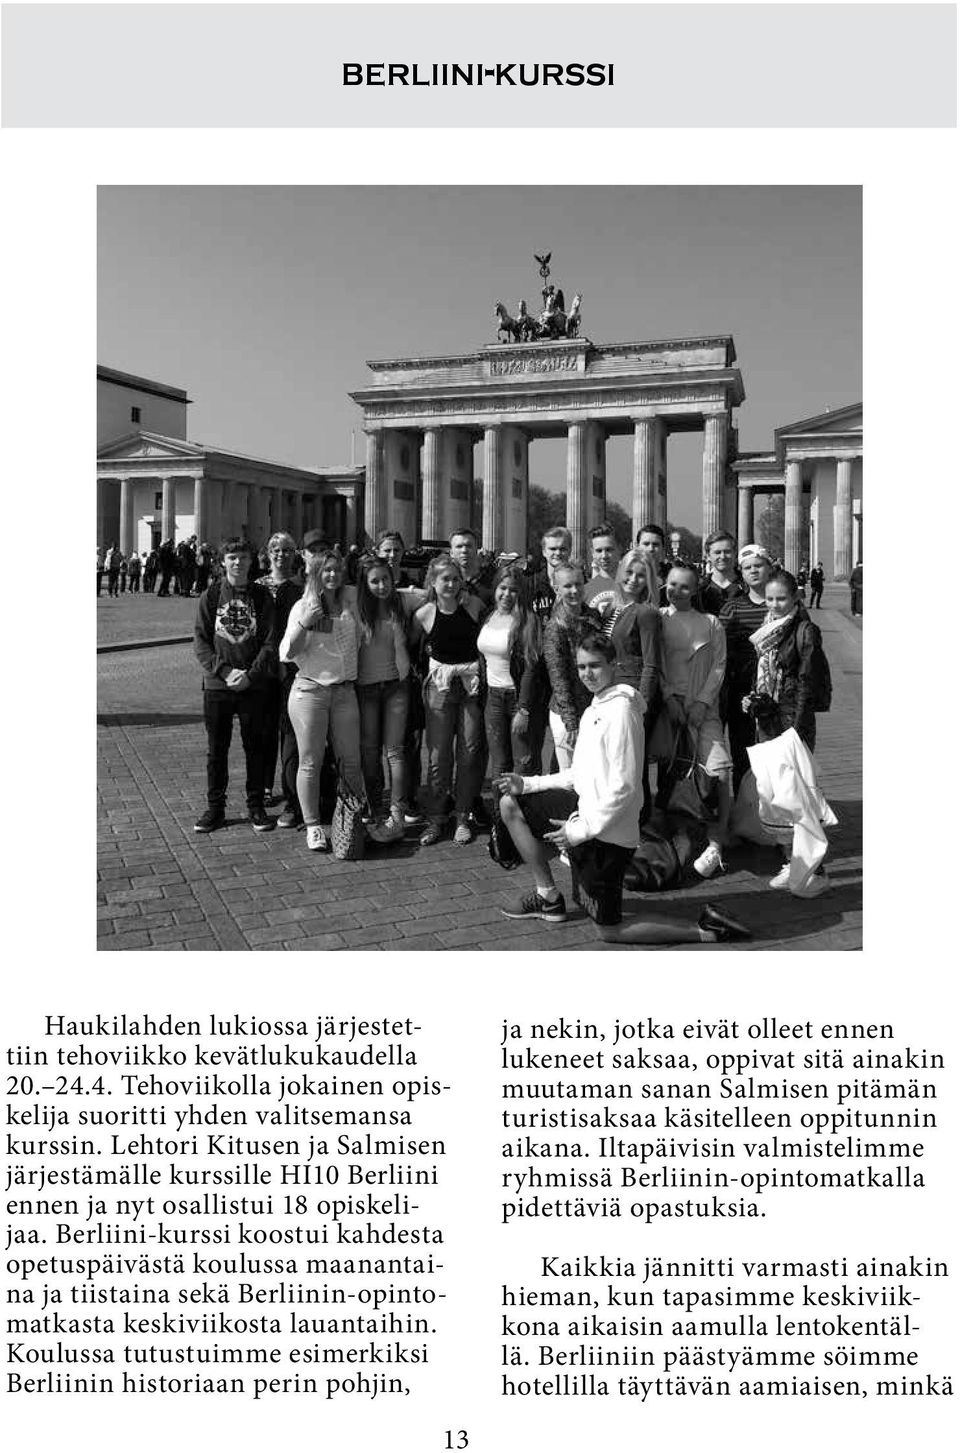 Berliini-kurssi koostui kahdesta opetuspäivästä koulussa maanantaina ja tiistaina sekä Berliinin-opintomatkasta keskiviikosta lauantaihin.